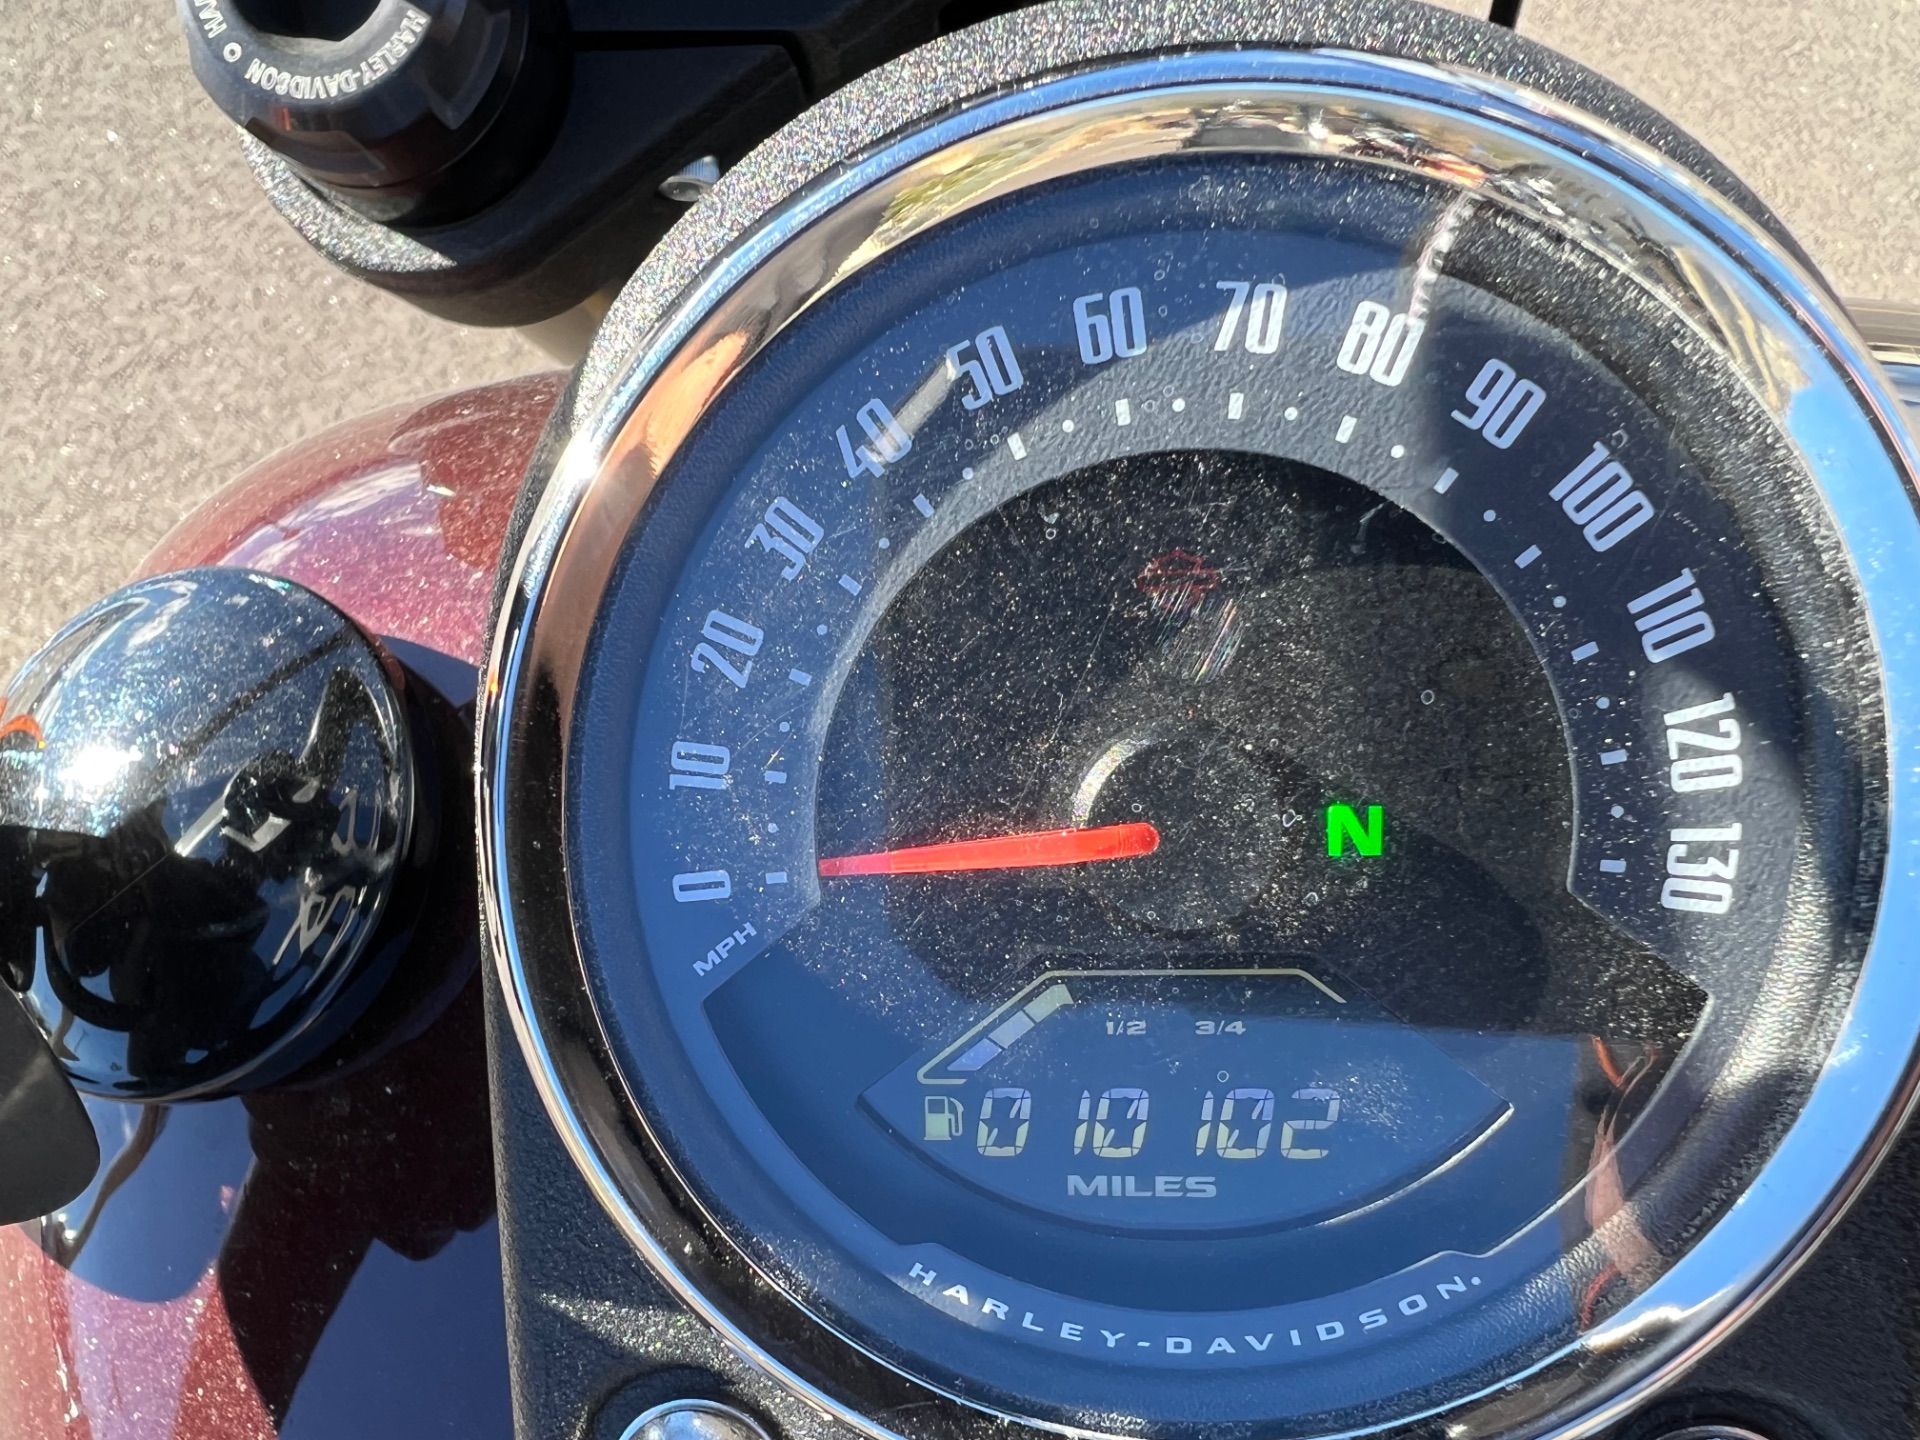 2021 Harley-Davidson Low Rider®S in Colorado Springs, Colorado - Photo 10